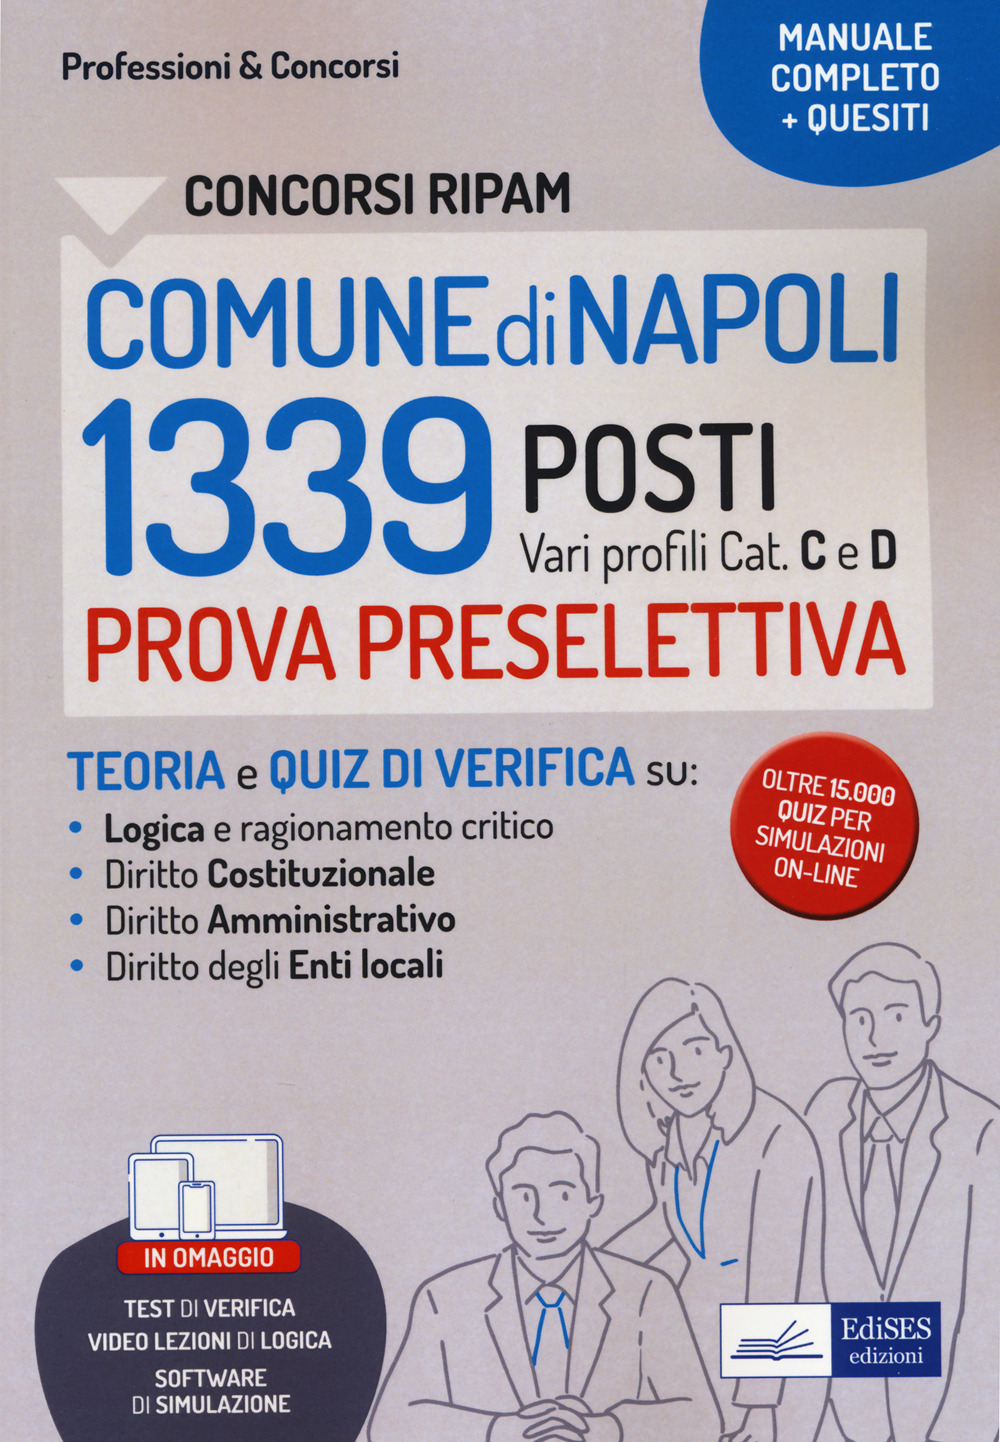 Concorsi RIPAM 1339 posti Comune di Napoli. Manuale e quesiti per la prova preselettiva. Con software di simulazione